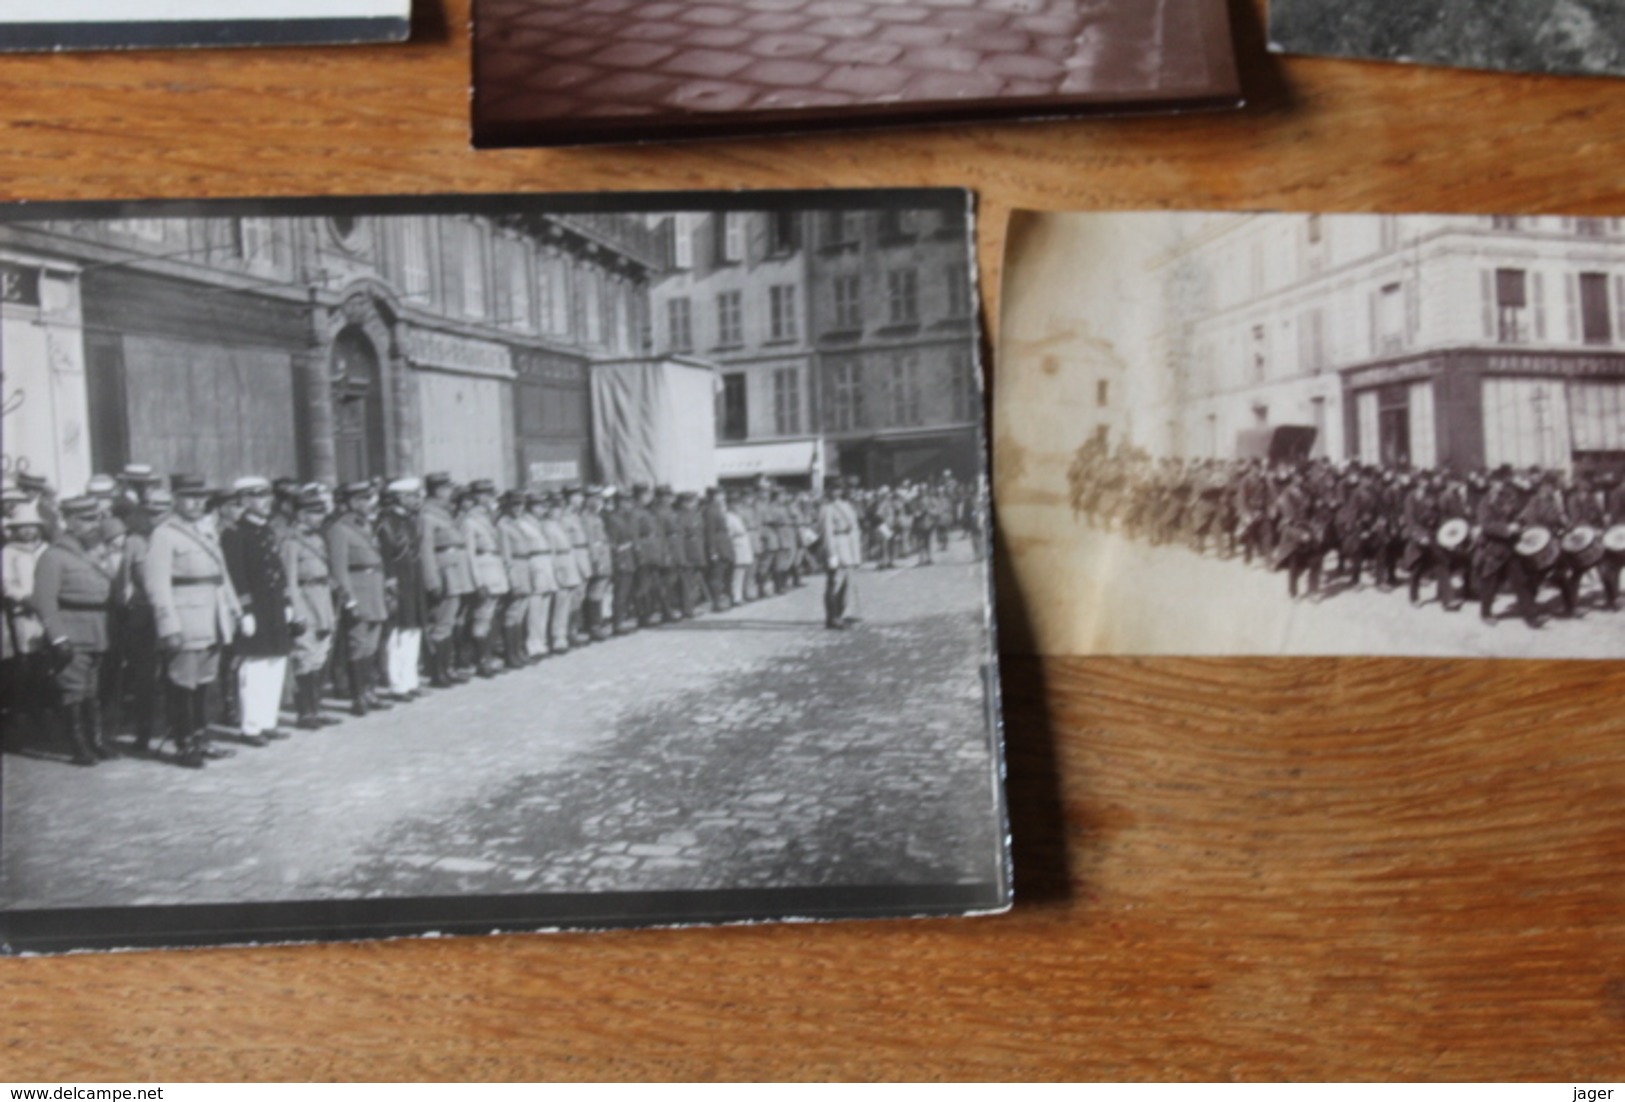 lot de photos de clique regimentaire 1890 1915